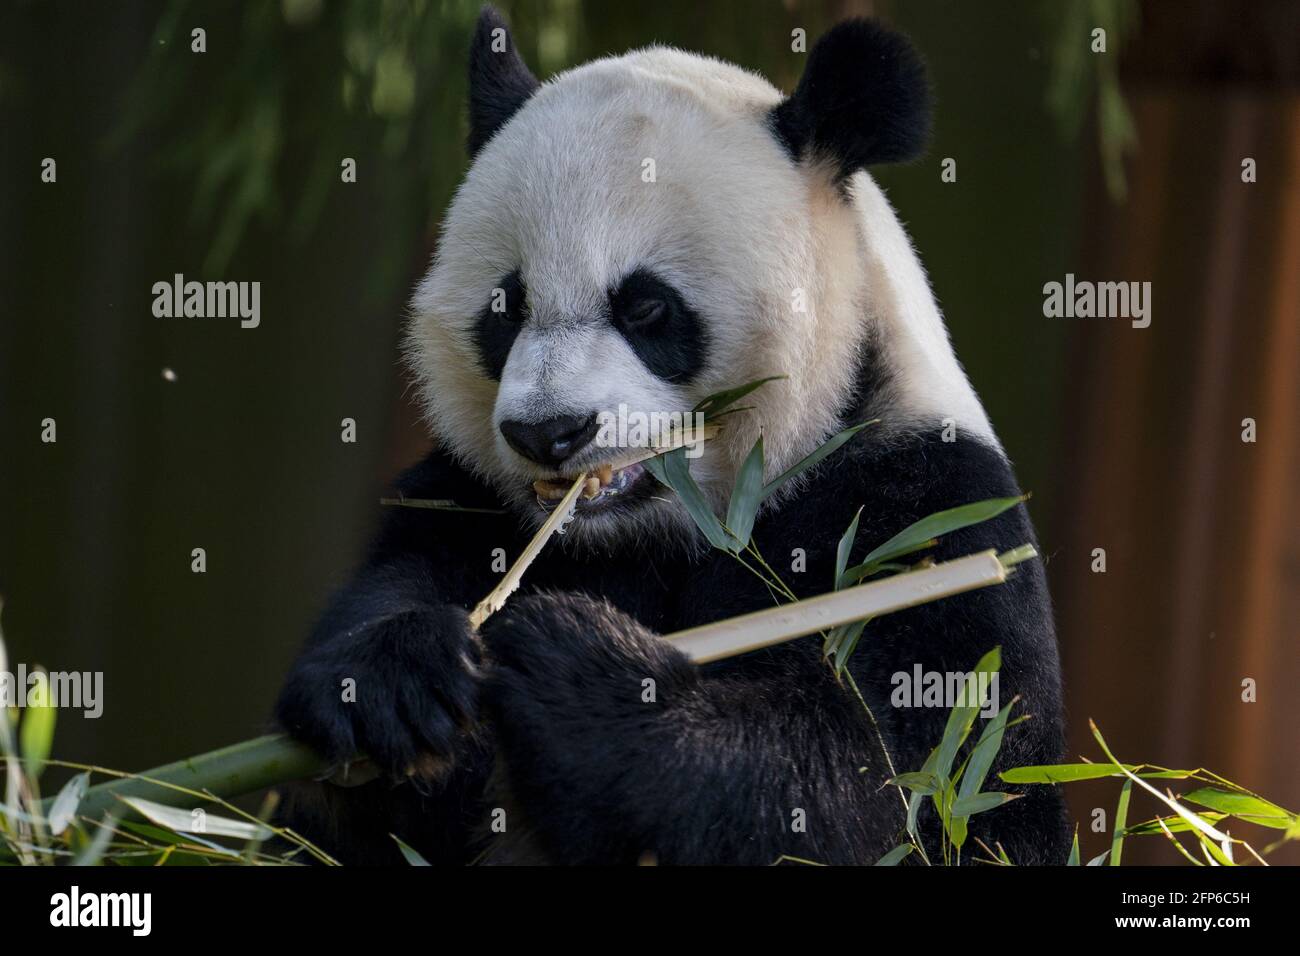 Washington, Usa. Mai 2021. Mei Xiang, eine 22-jährige weibliche Riesenpanda, isst am Donnerstag, den 20. Mai 2021, im Smithsonian National Zoo in Washington, DC Bambus. Der Smithsonian National Zoo ist am Freitag wieder für die Öffentlichkeit zugänglich, da er wegen Covid-19 geschlossen ist. Foto von Tasos Katopodis/UPI Credit: UPI/Alamy Live News Stockfoto